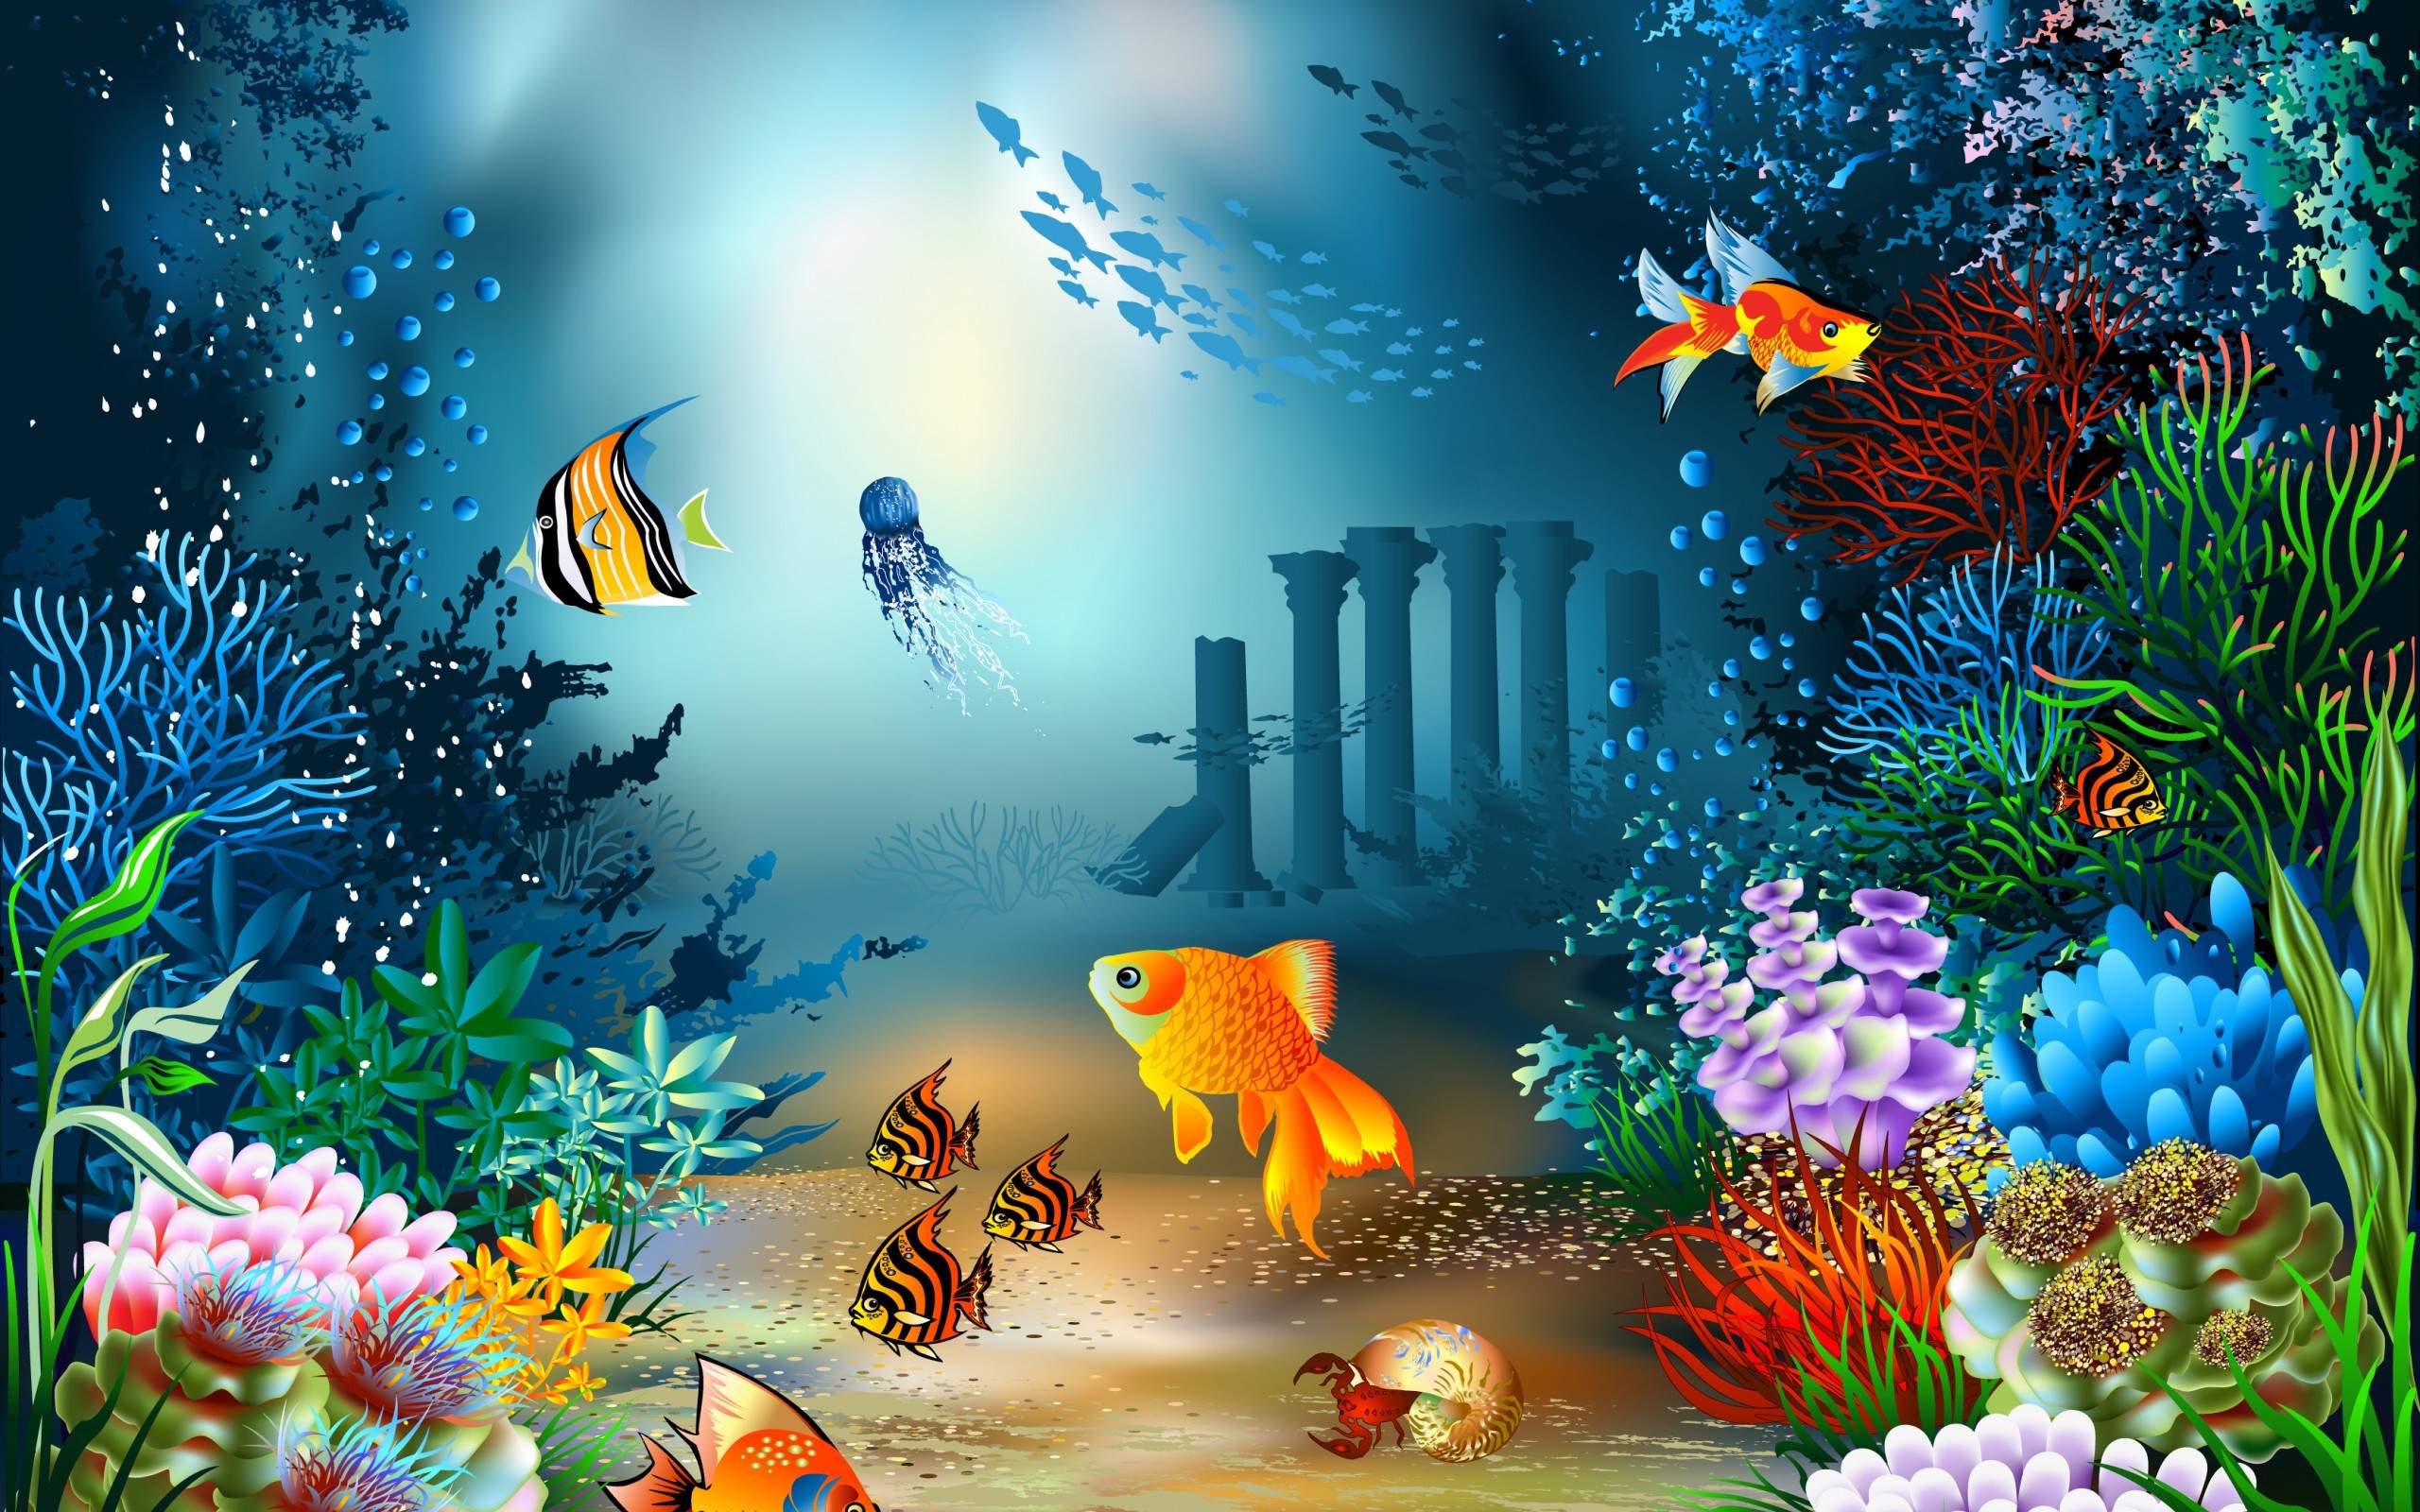 papel pintado de la vida marina,biología marina,submarino,pez,arrecife de coral,peces de arrecife de coral